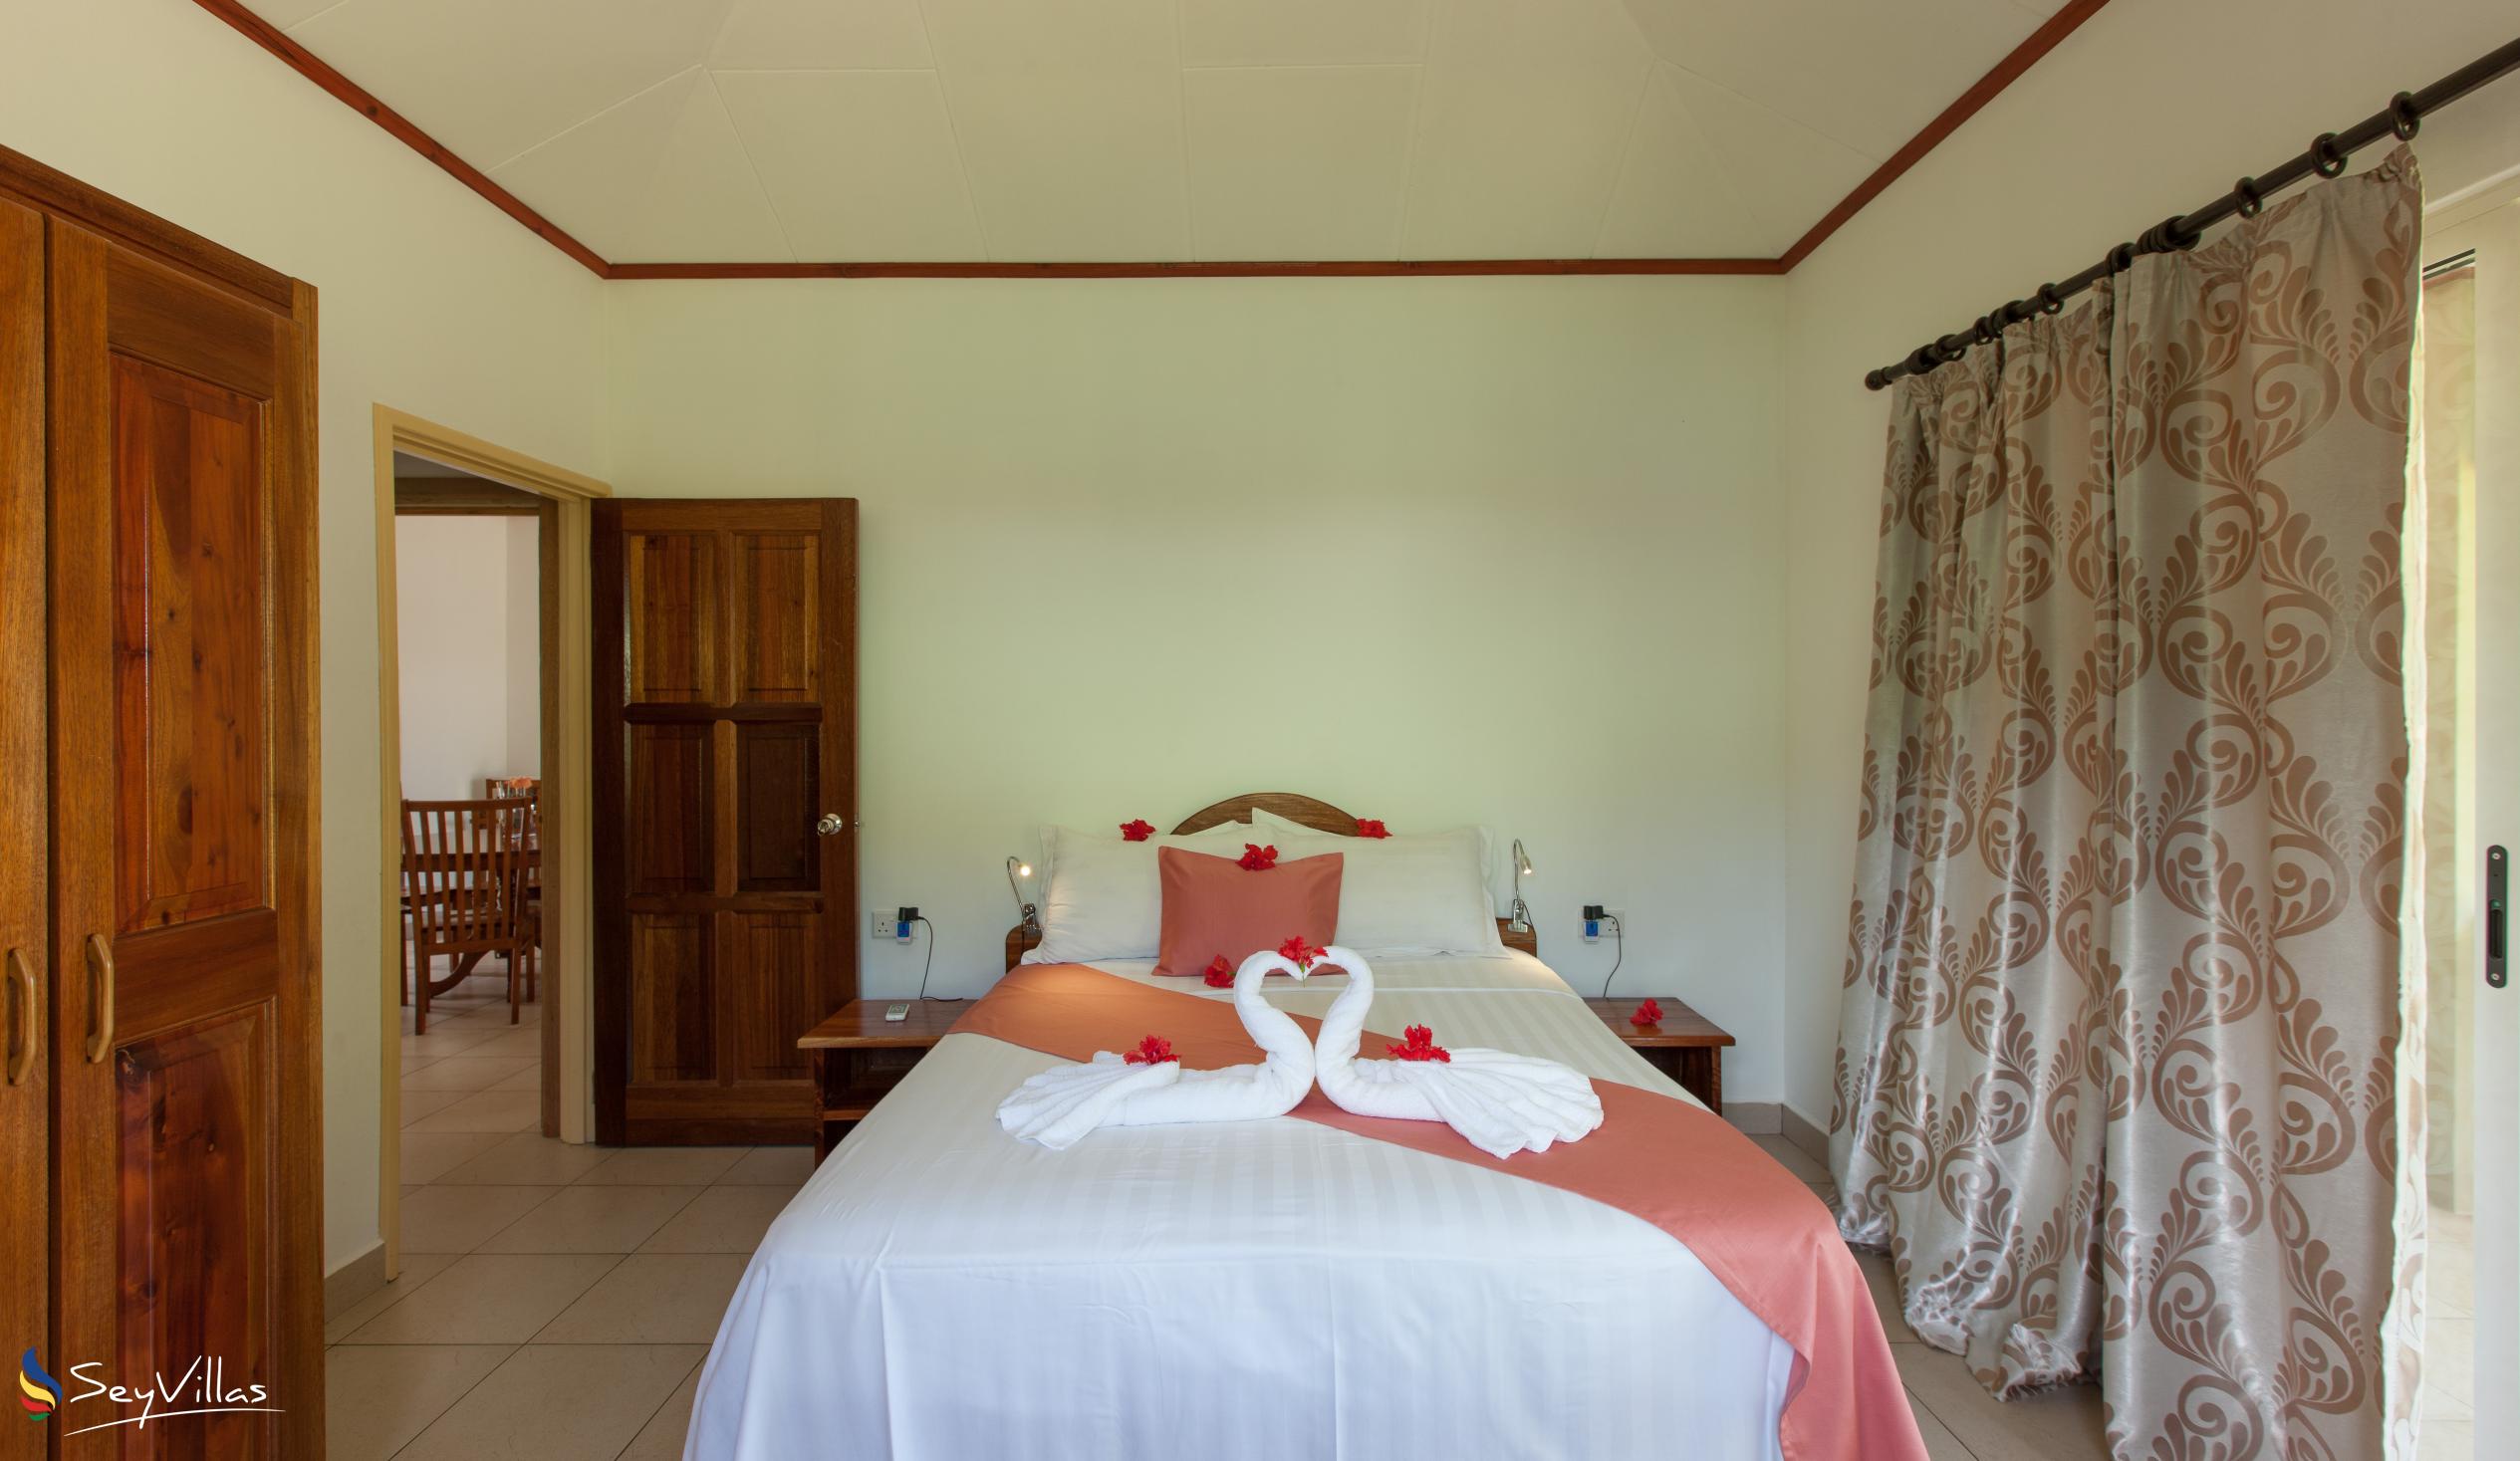 Foto 26: Hostellerie La Digue - Bungalow con 3 camere da letto - La Digue (Seychelles)